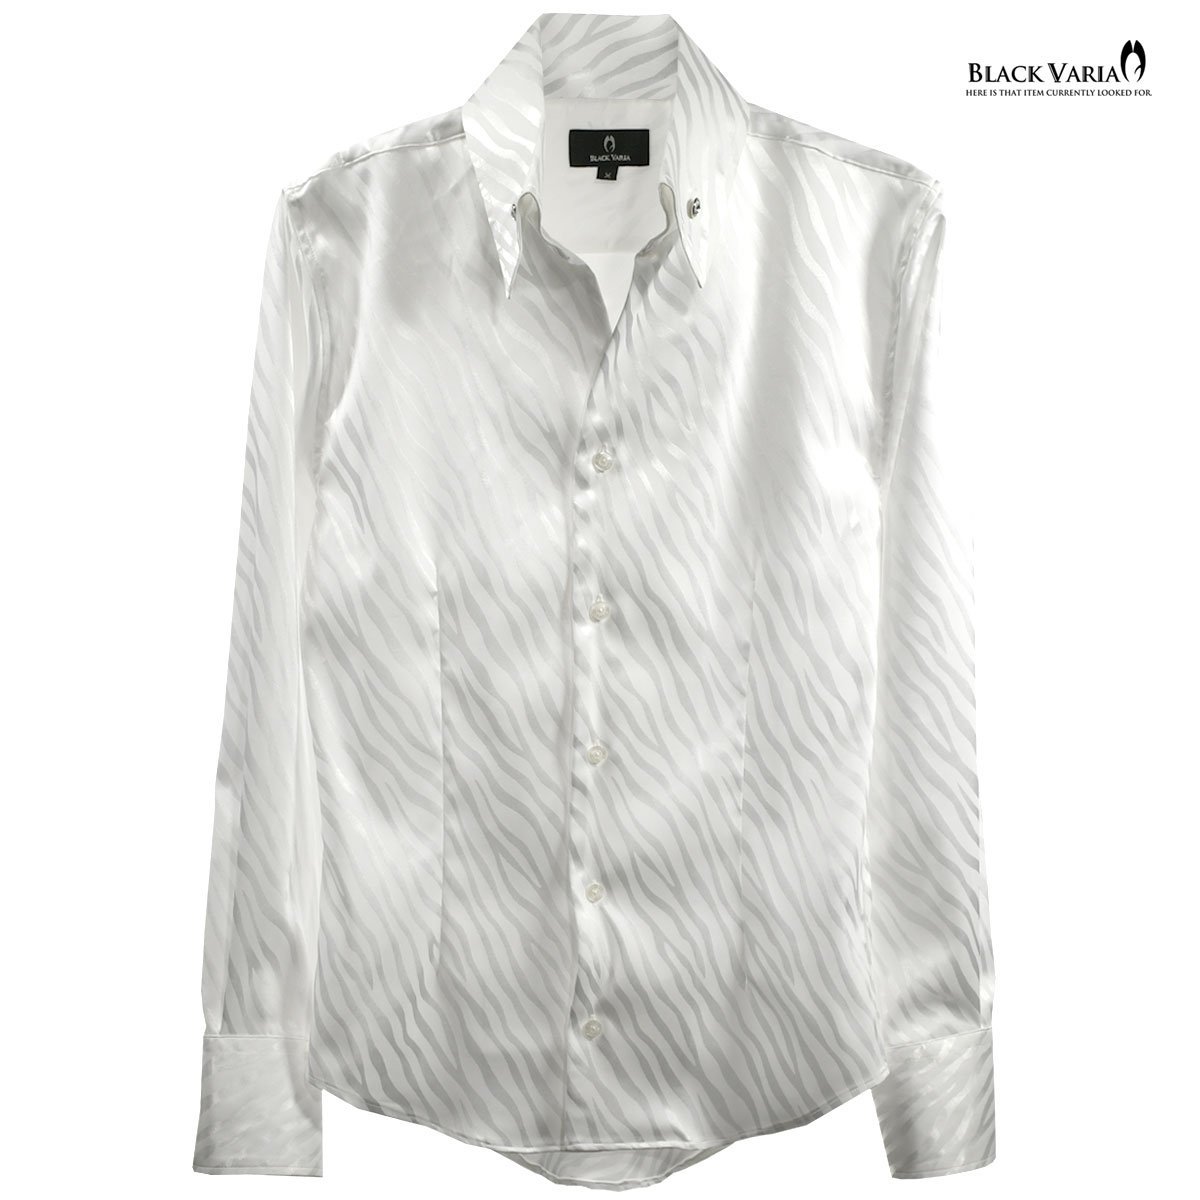 181724-wh BlackVaria サテンシャツ ドレスシャツ スキッパー ゼブラ柄 ジャガード ボタンダウン スリム メンズ(ホワイト白) XL パーティー_画像4